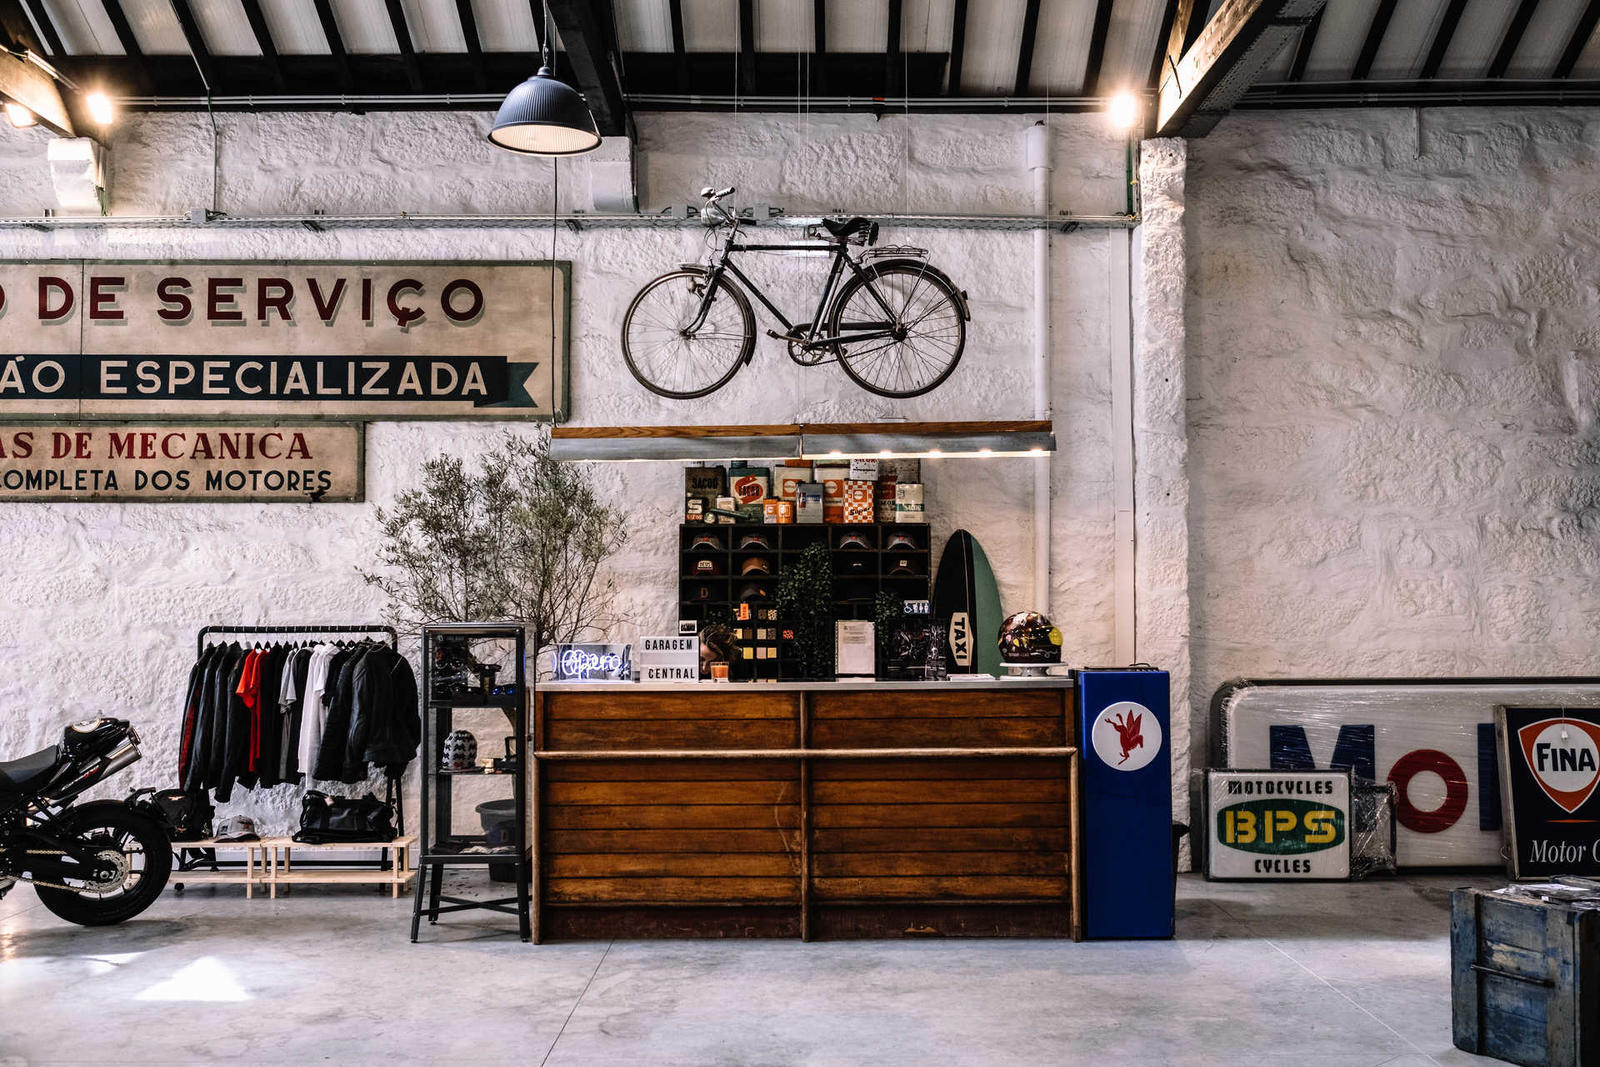 Garagem Central abre portas na rua da Alegria, 1023, na cidade do Porto.